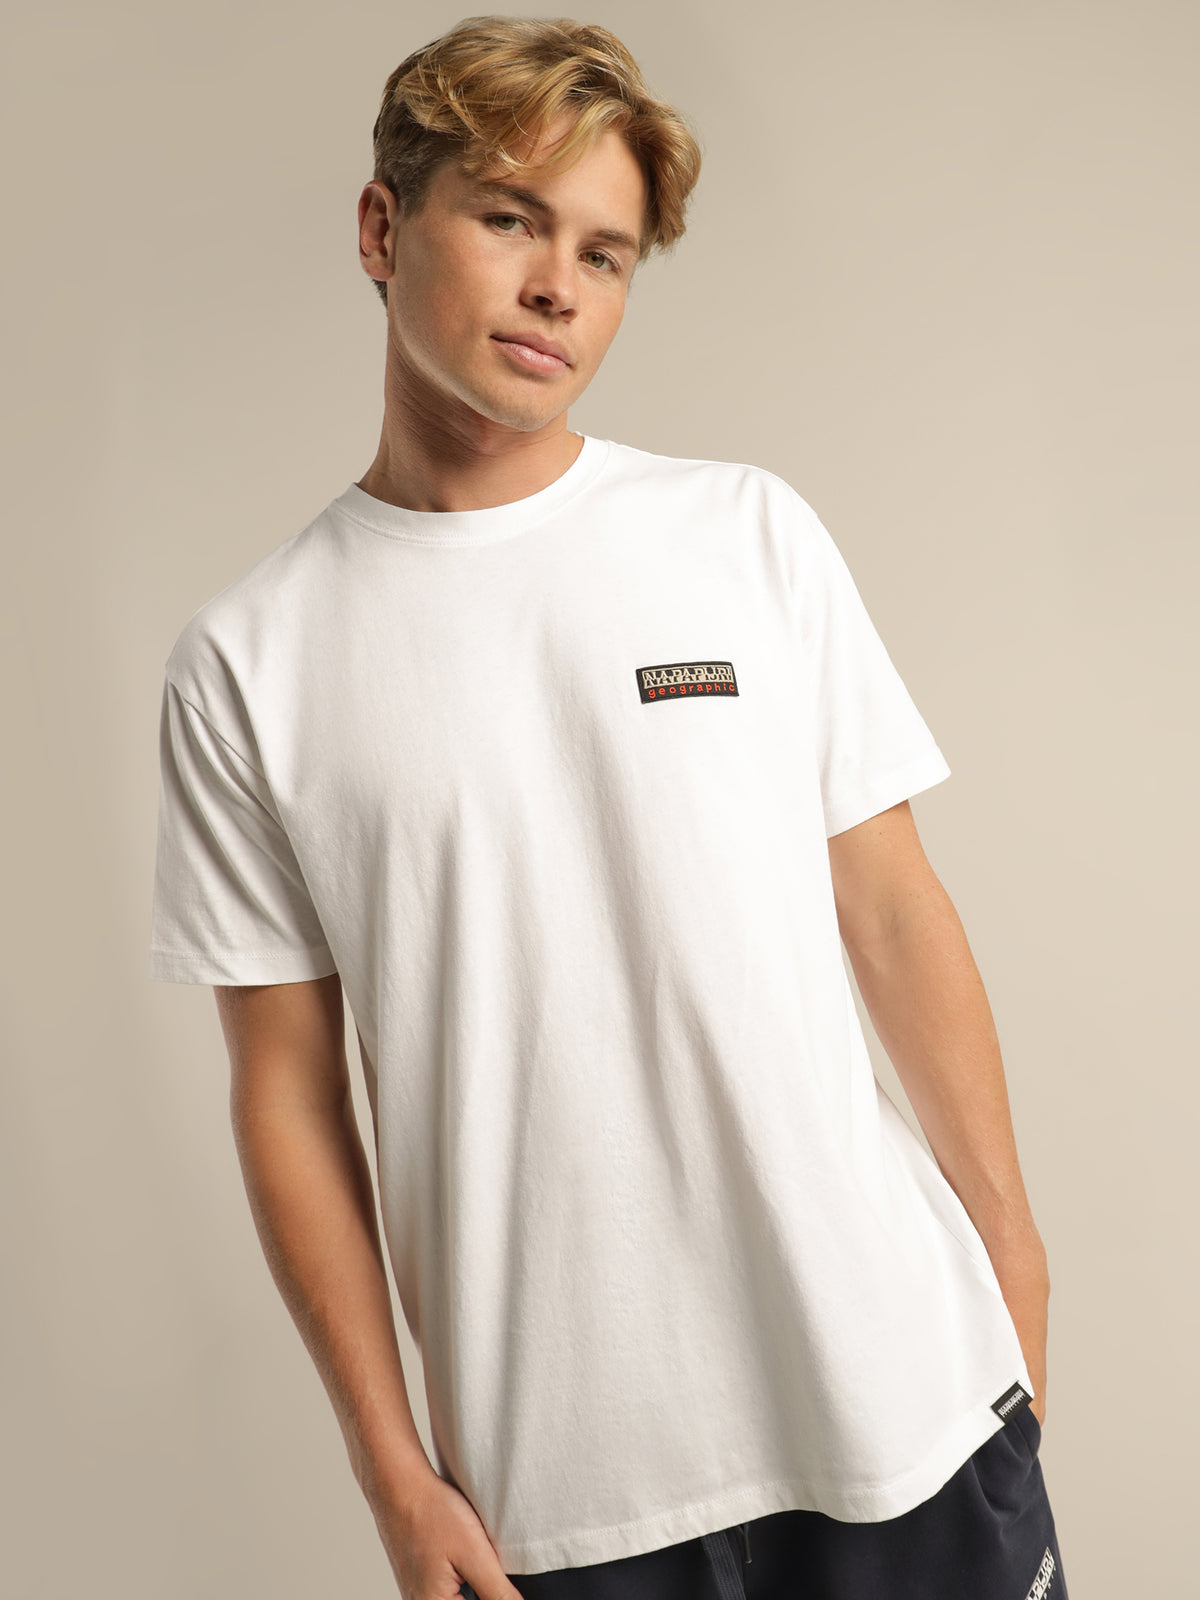 Sase SS 1 T-Shirt in White